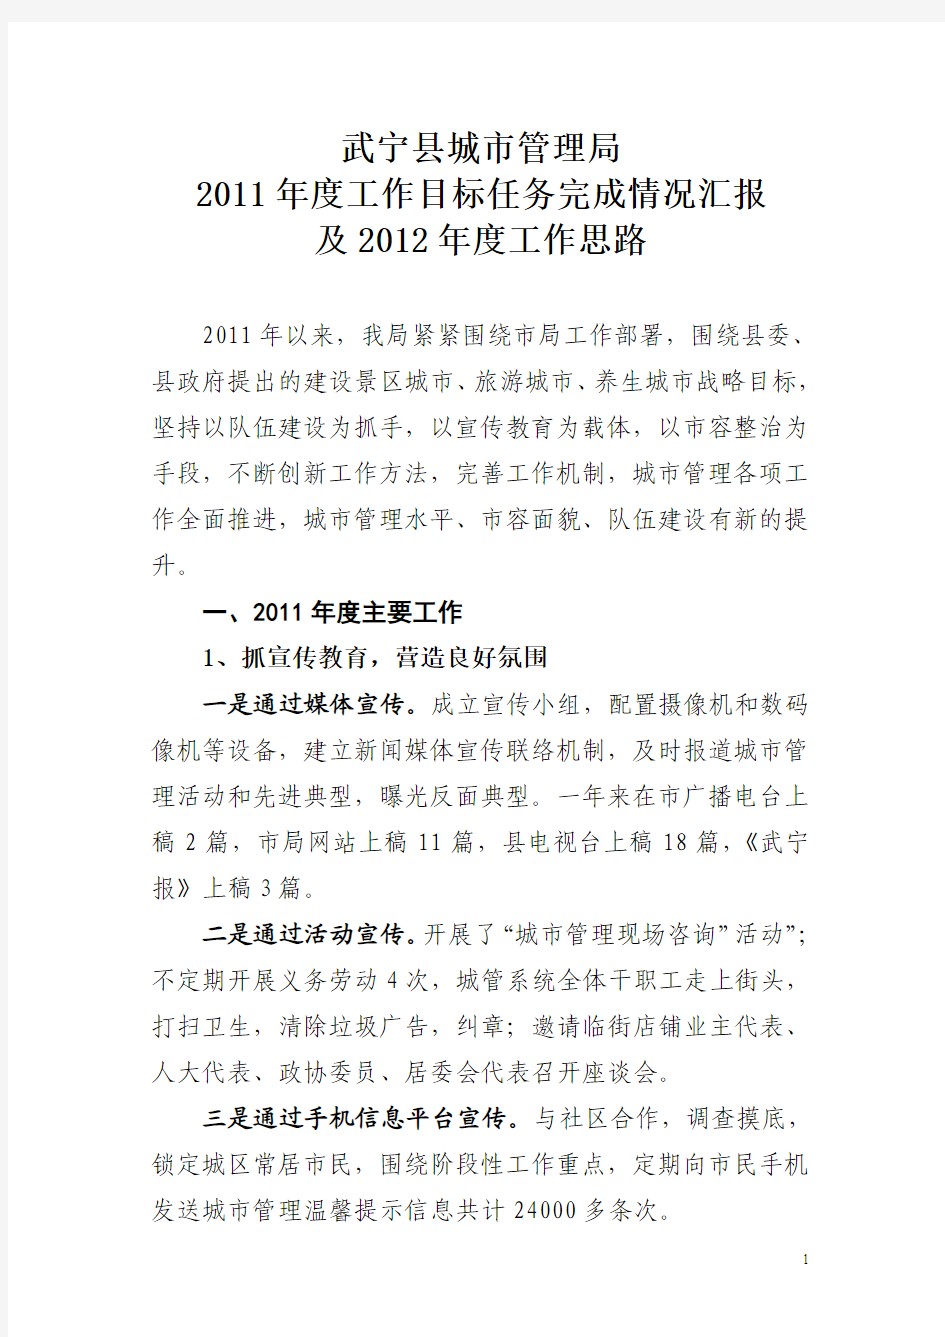 武宁县城市管理局2011年度工作汇报和2012年度工作思路